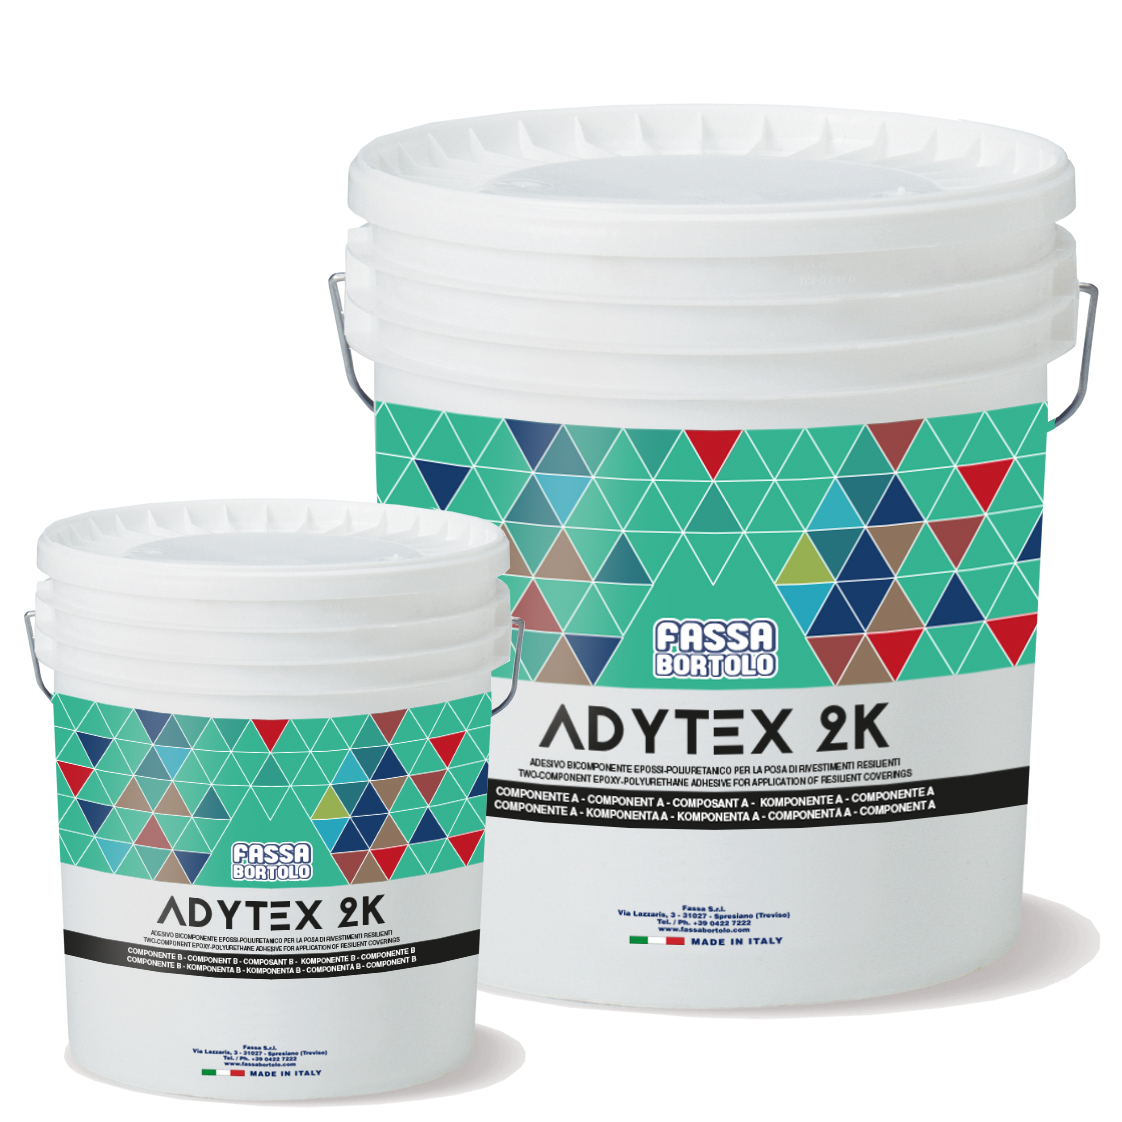 ADYTEX 2K: Adesivo epoxi-poliuretânico bi-componente para pavimentos resilientes